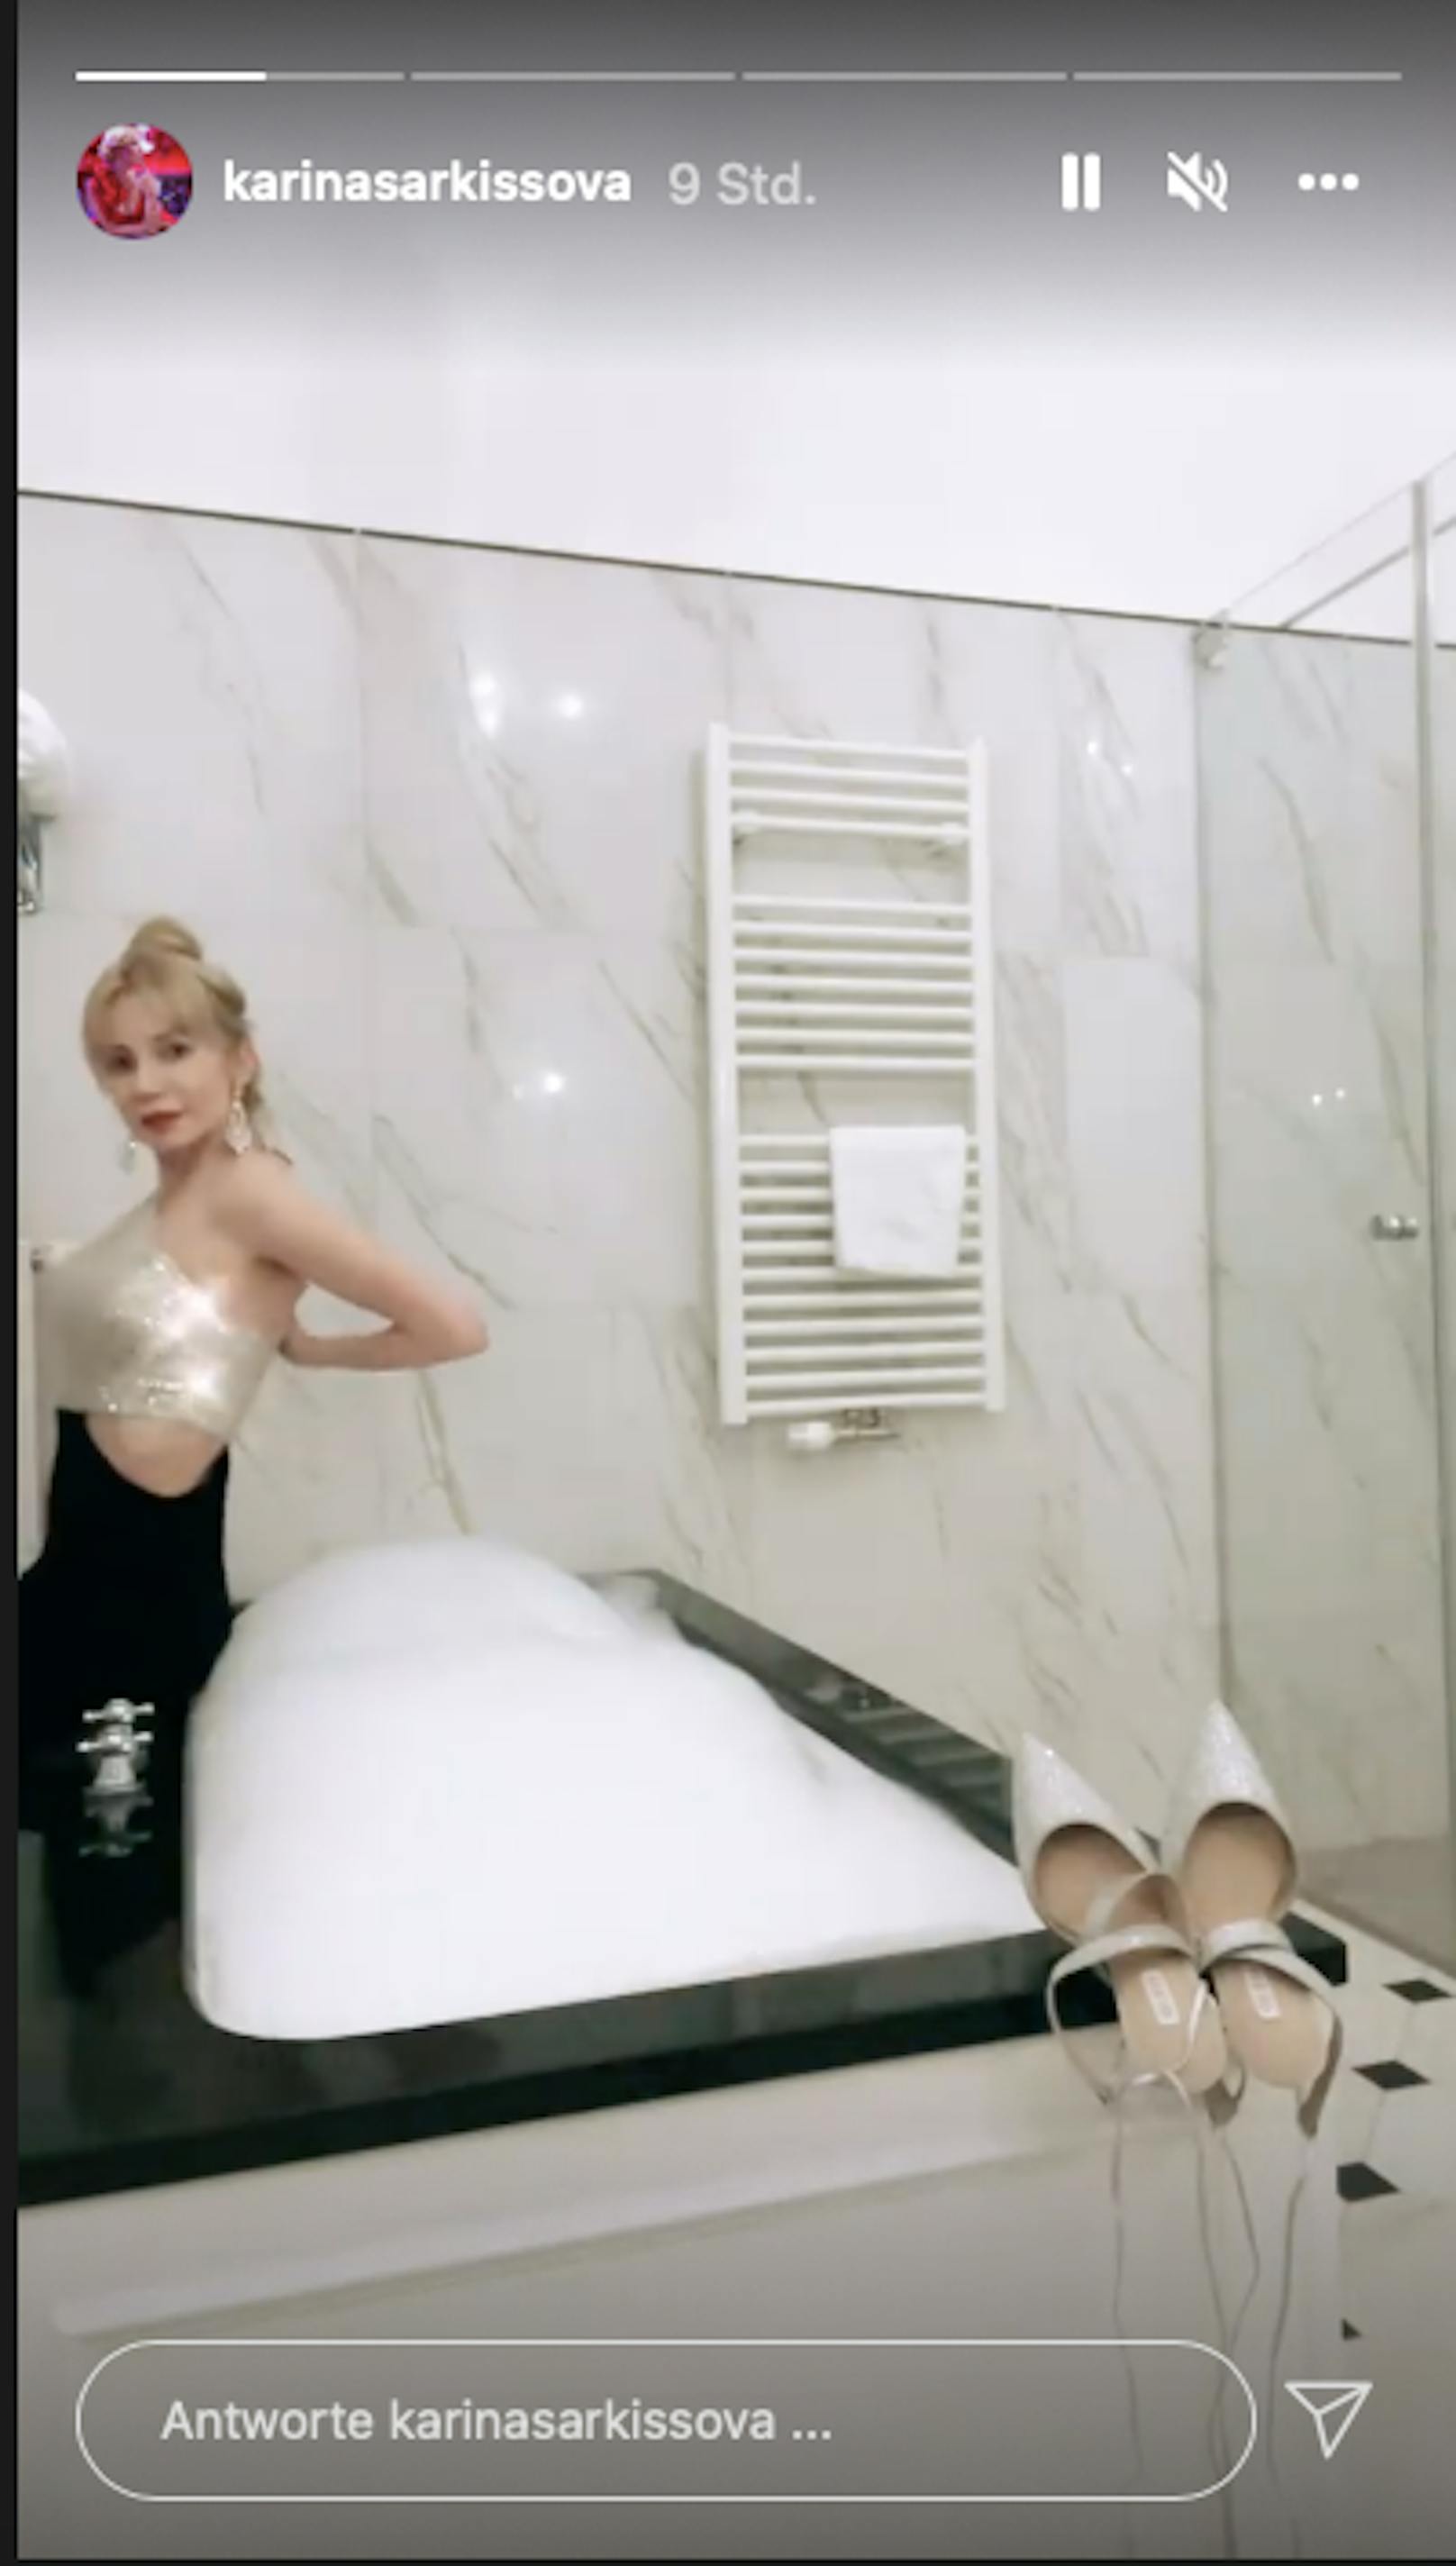 In ihrem Hotelbadezimmer zieht sich Karina Sarkissova langsam aus. 